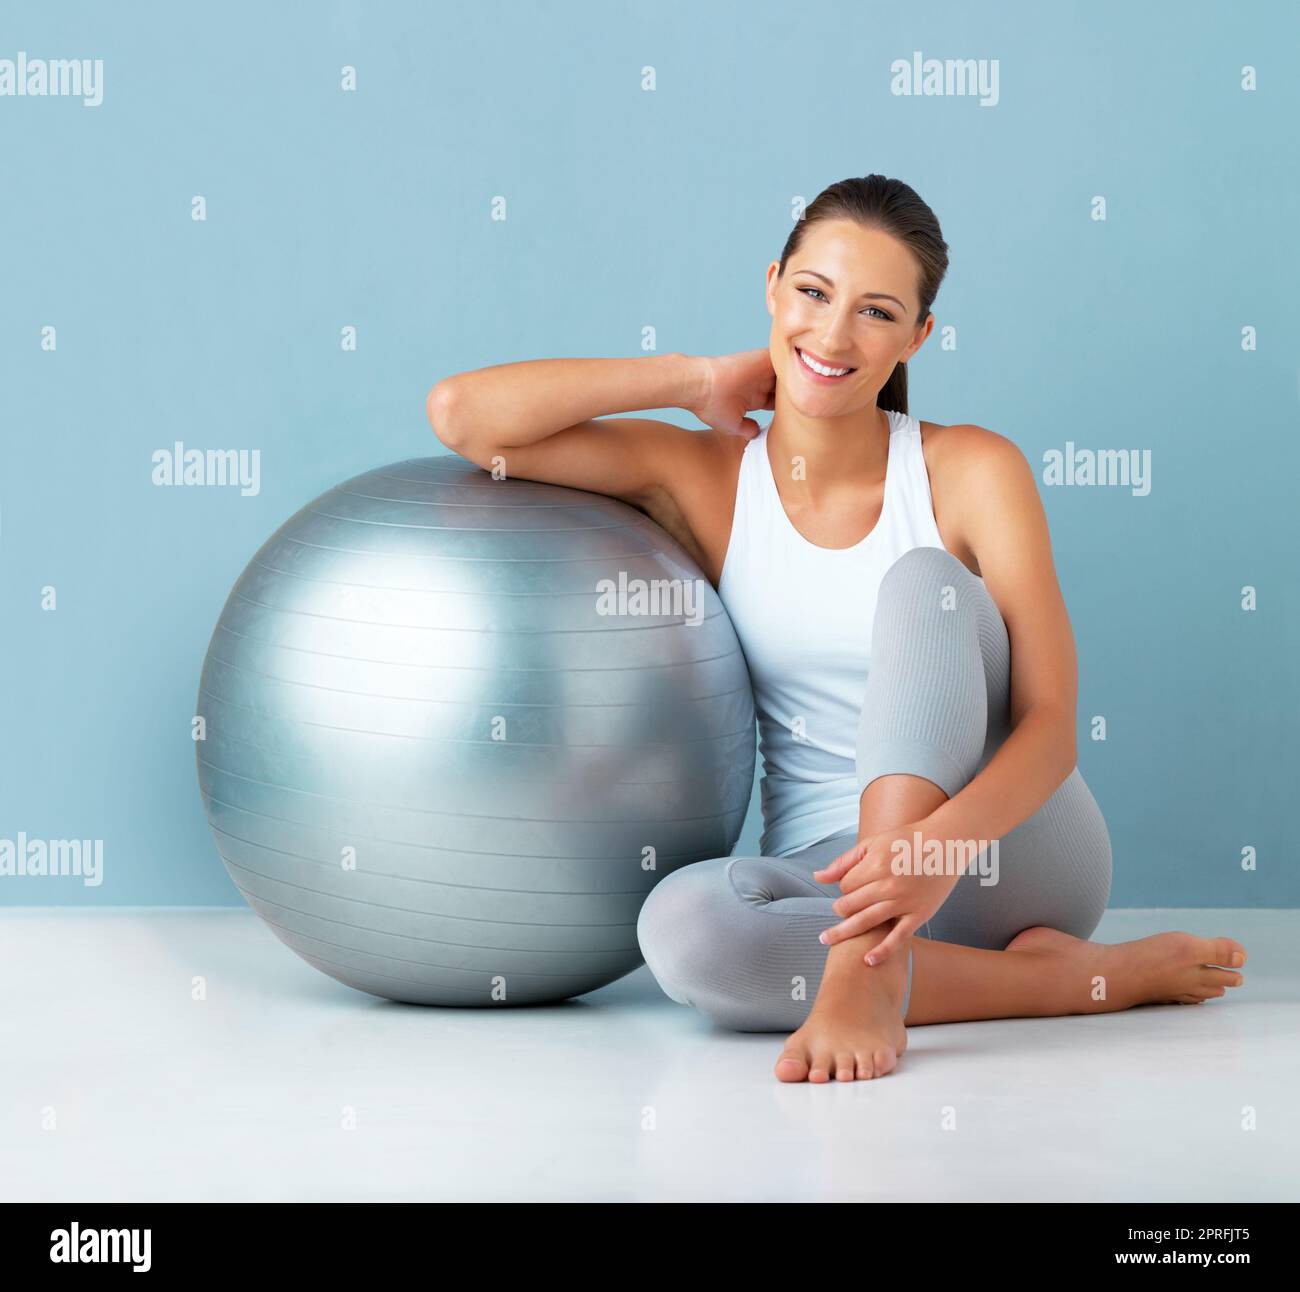 Es ist alles, was ich für ein Training brauche. Studioportrait einer gesunden jungen Frau, die sich vor blauem Hintergrund an einem Übungsball lehnt. Stockfoto